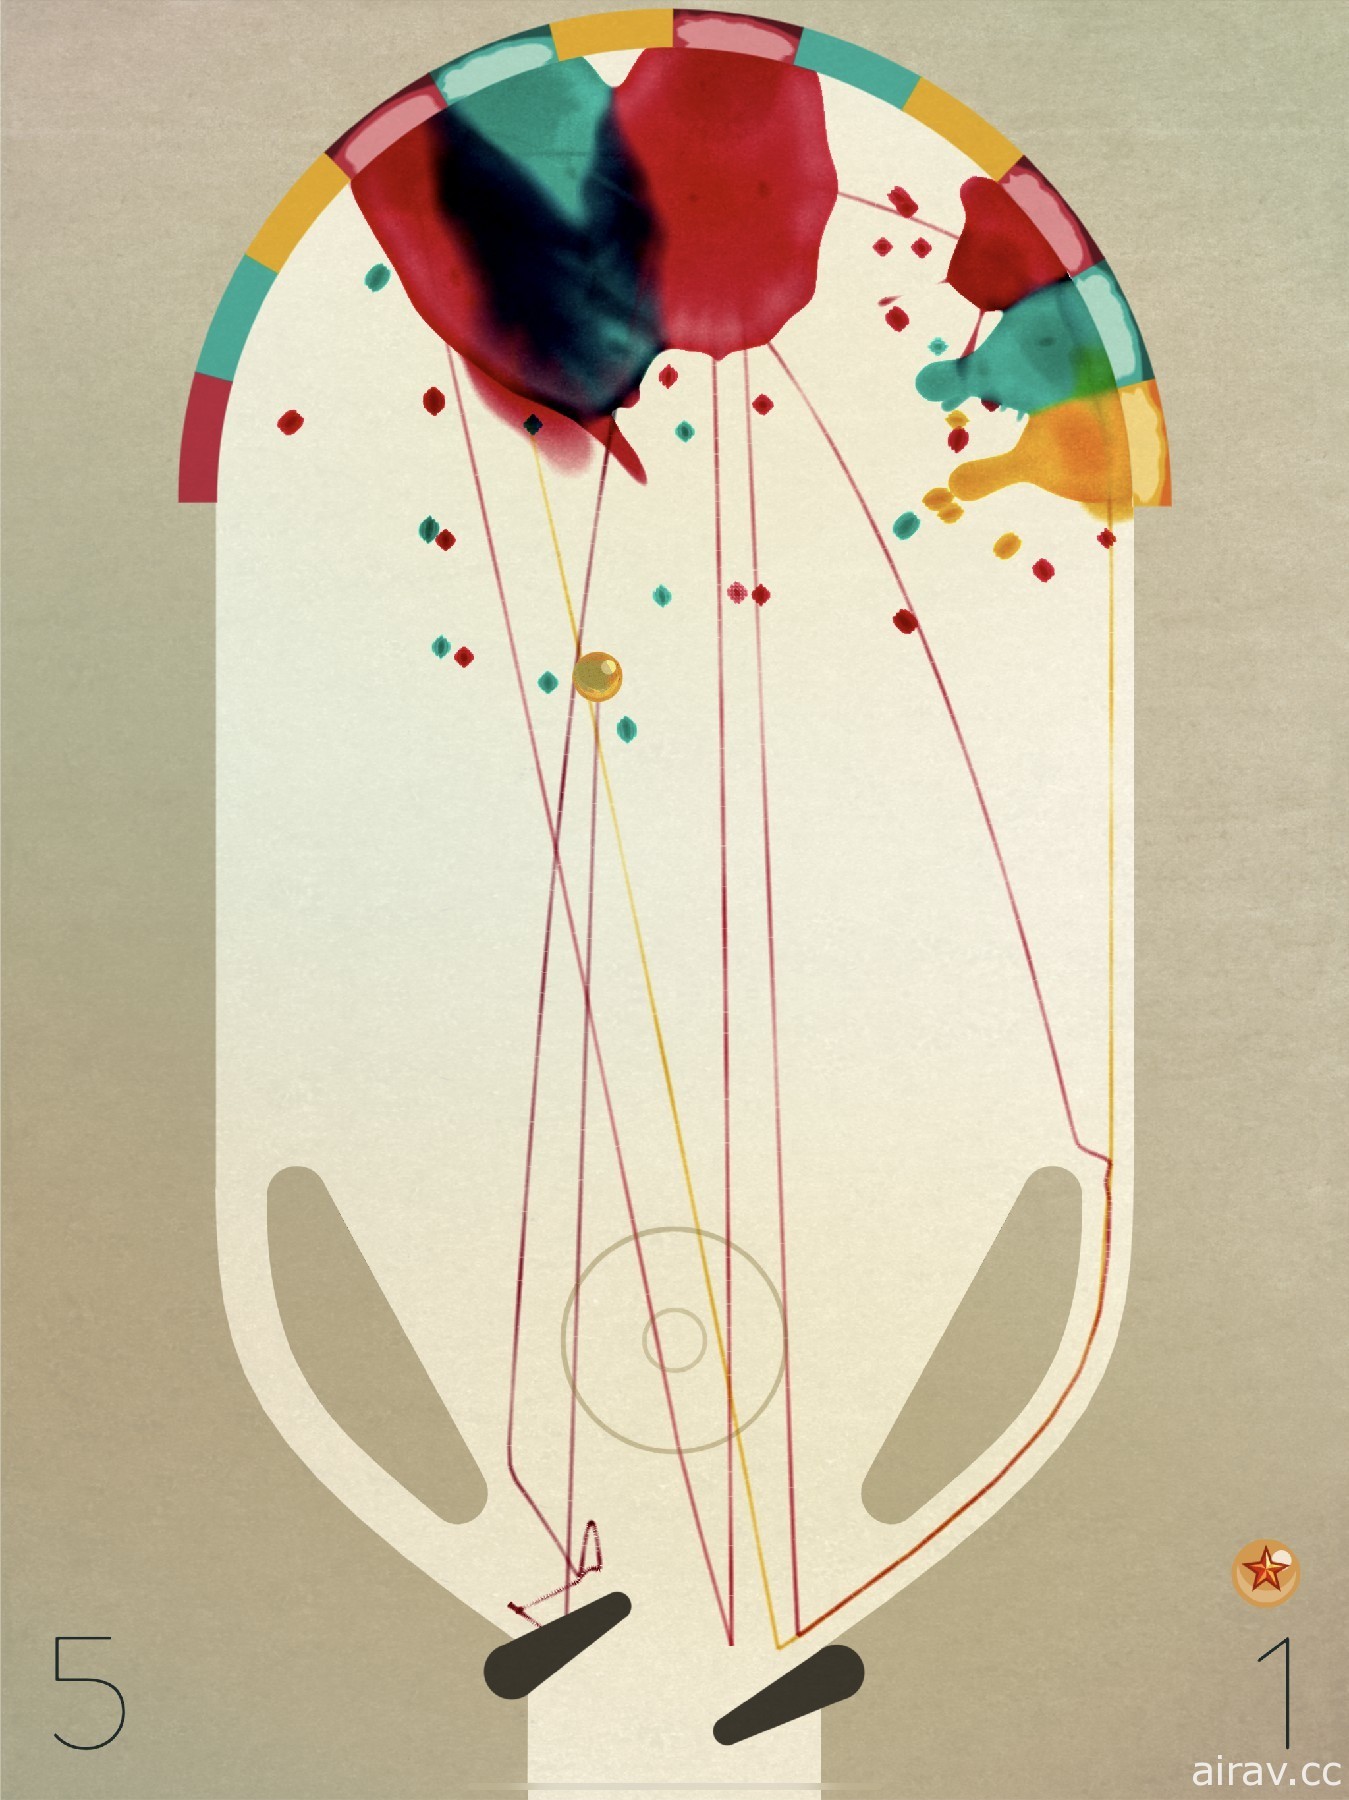 【試玩】《INKS.+》利用彈射軌跡創造個人的彈珠台藝術